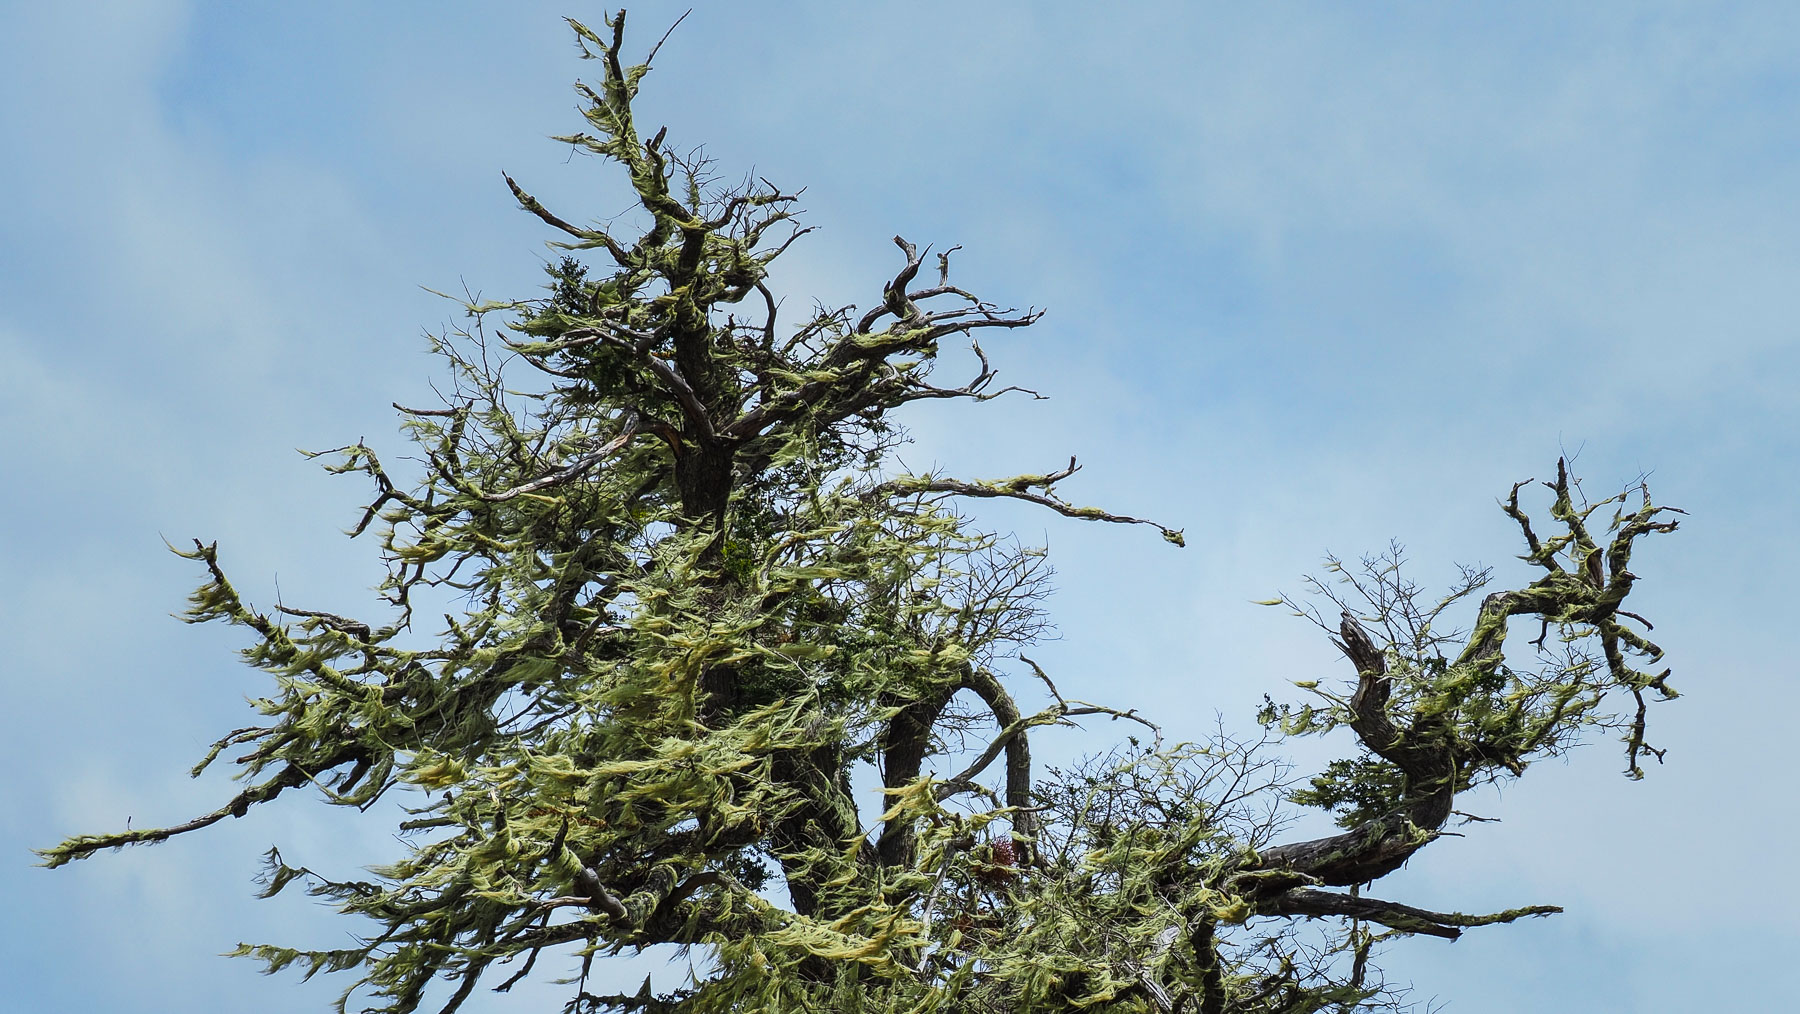 Den mit Flechten überwucherten Bäumen sieht man das harte Klima an